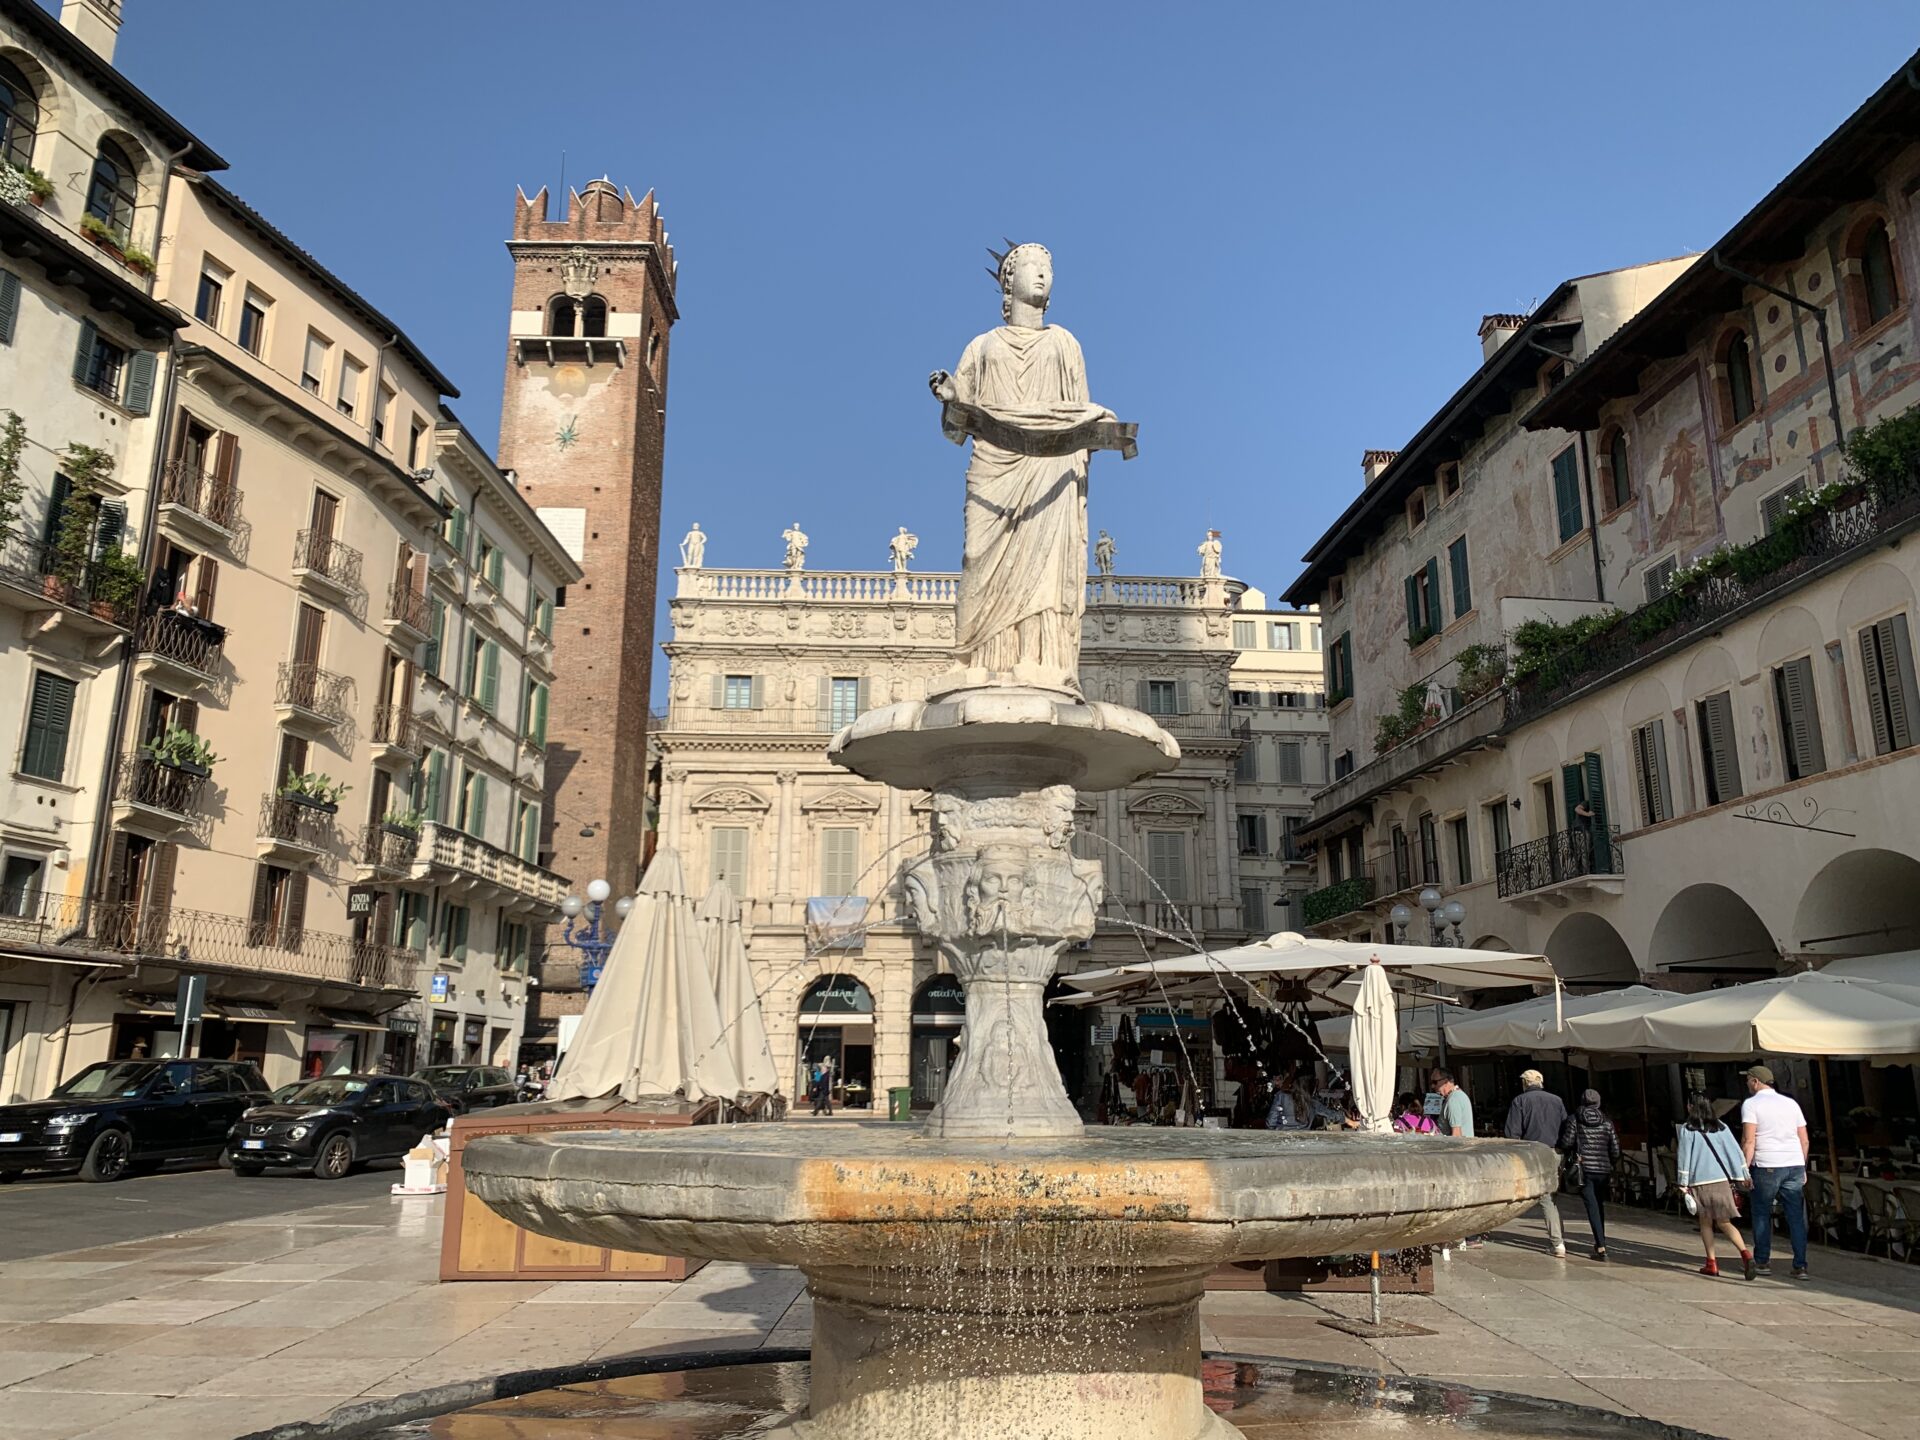 Verona Italy Travel Guide